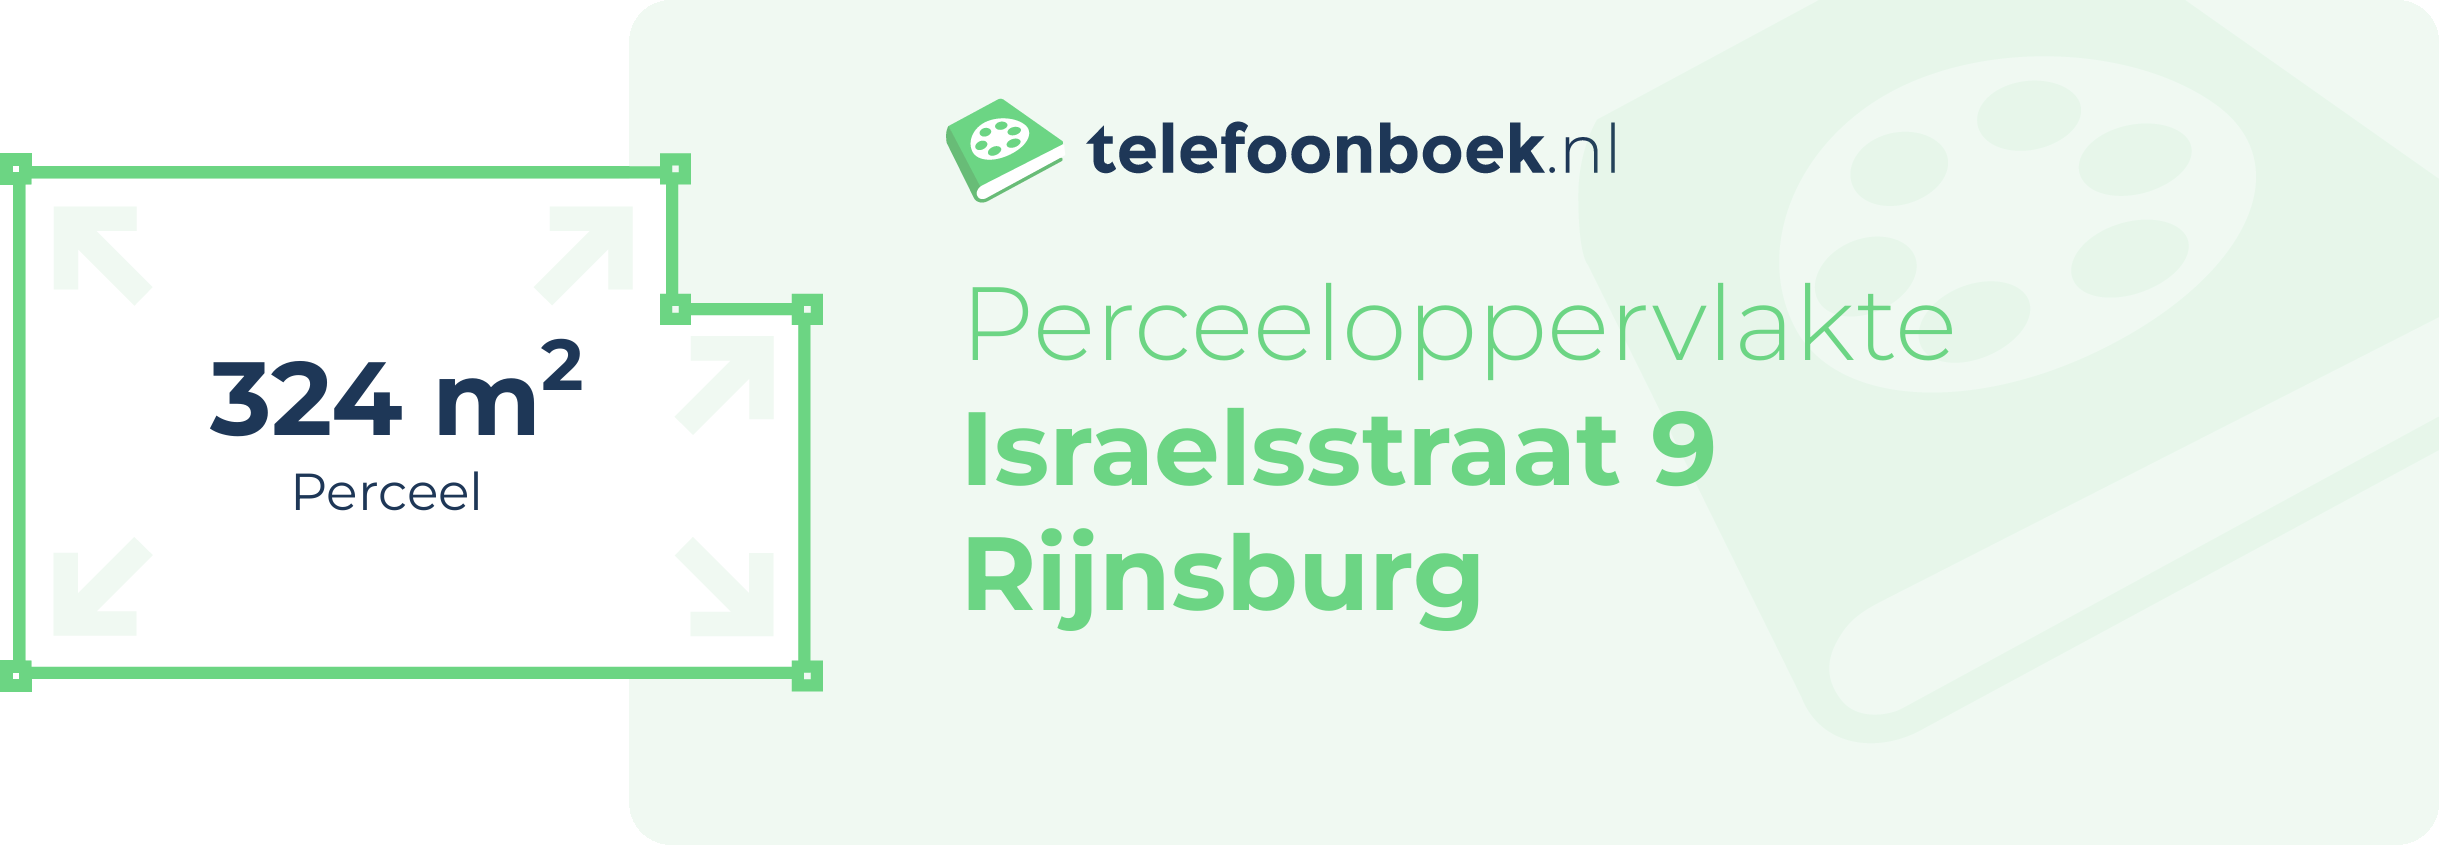 Perceeloppervlakte Israelsstraat 9 Rijnsburg